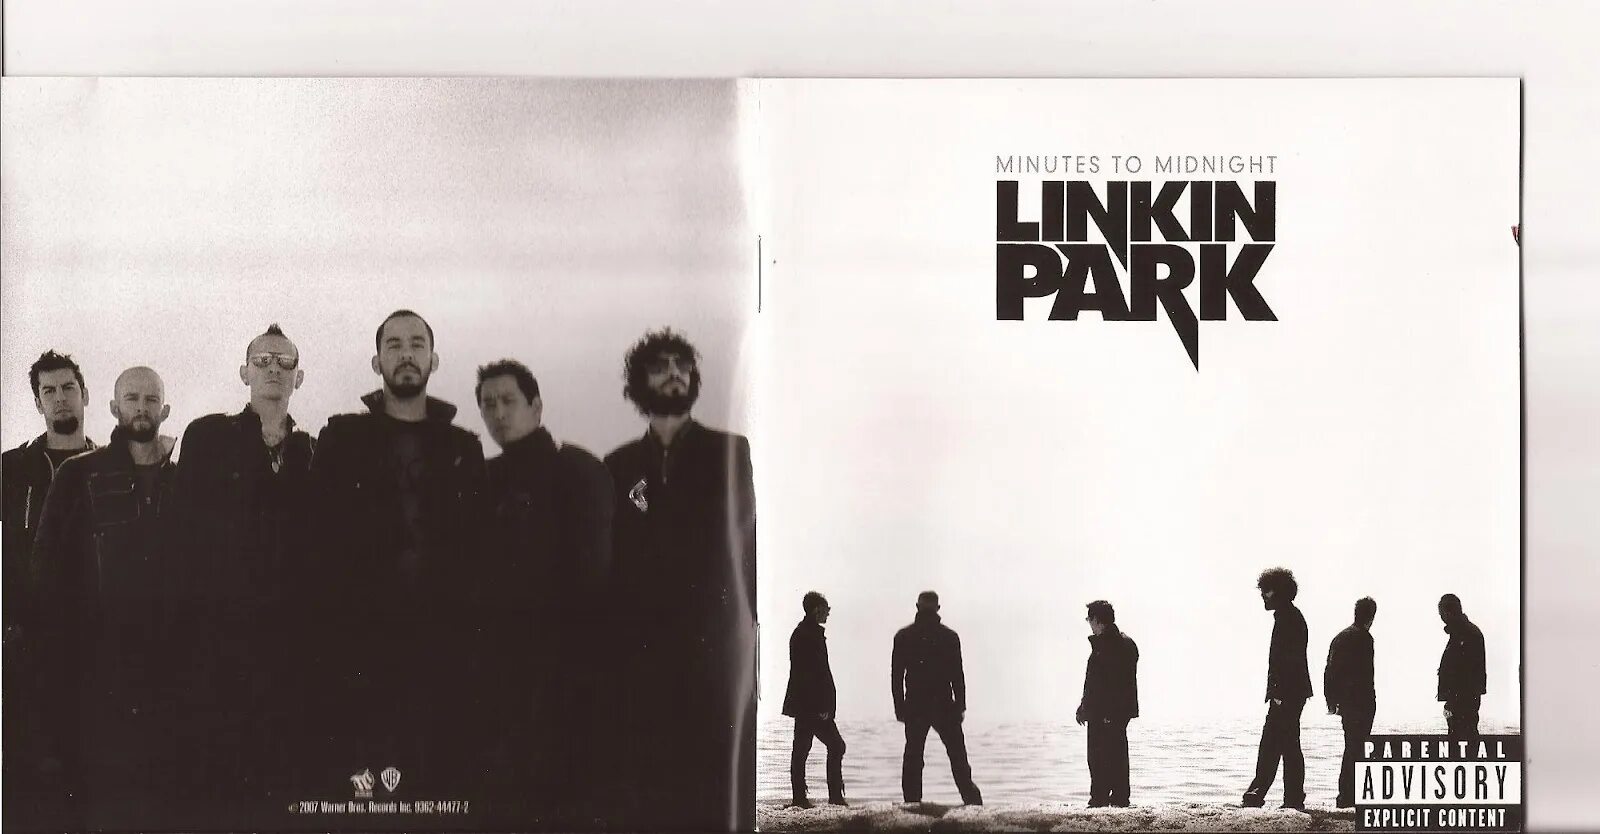 Линкин парк minutes to Midnight. Linkin Park minutes to Midnight 2007. Minutes to Midnight Linkin Park обложка 2007. Linkin Park minutes to Midnight CD. Минута обложка